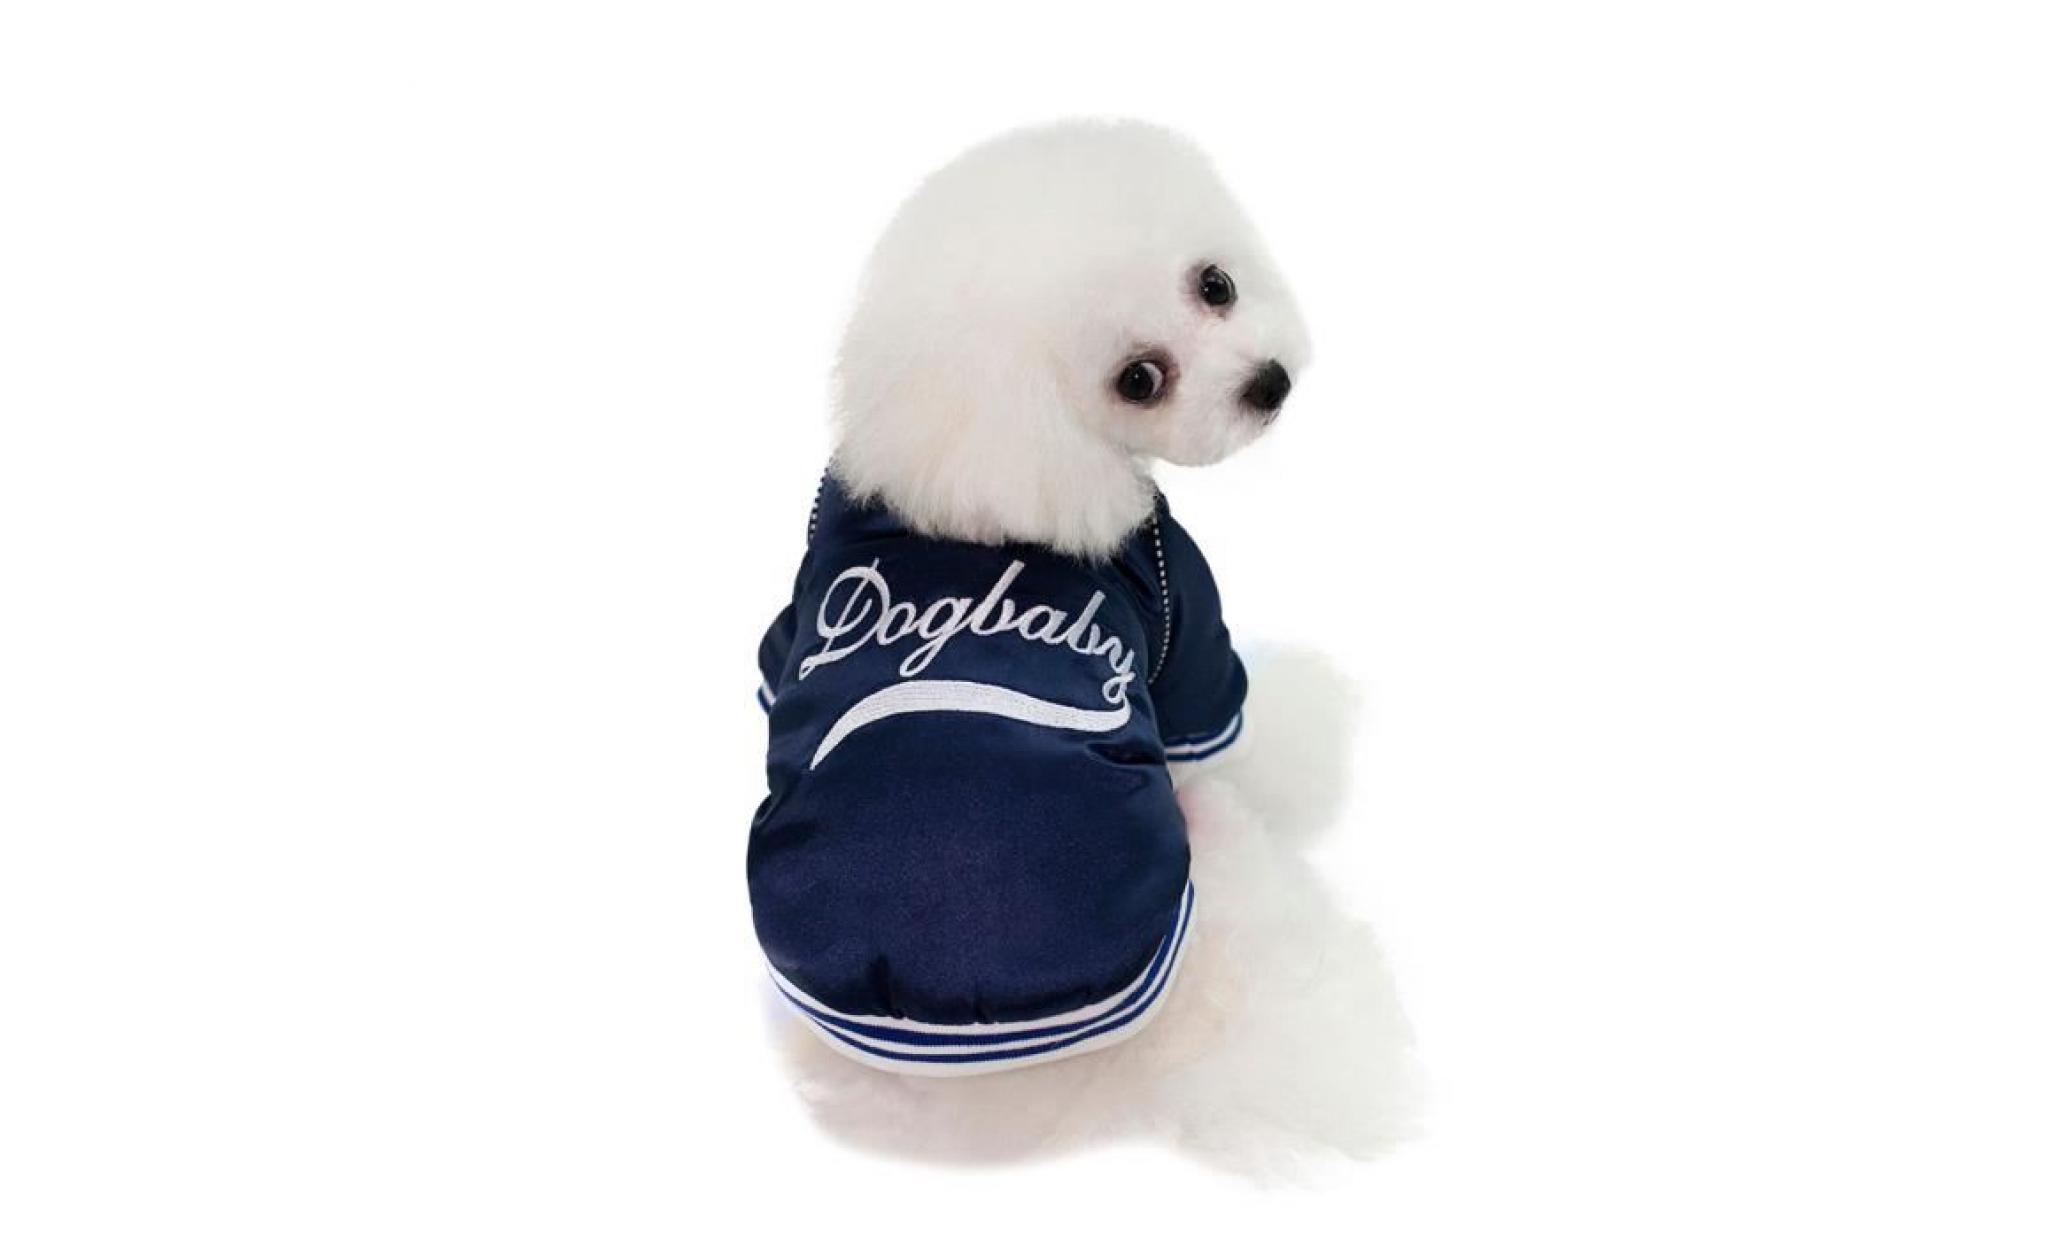 code xxl bleu foncé dogbaby chien nouvelle usine spot vêtements d'hiver directe commerce extérieur modèles d'explosion taobao coton